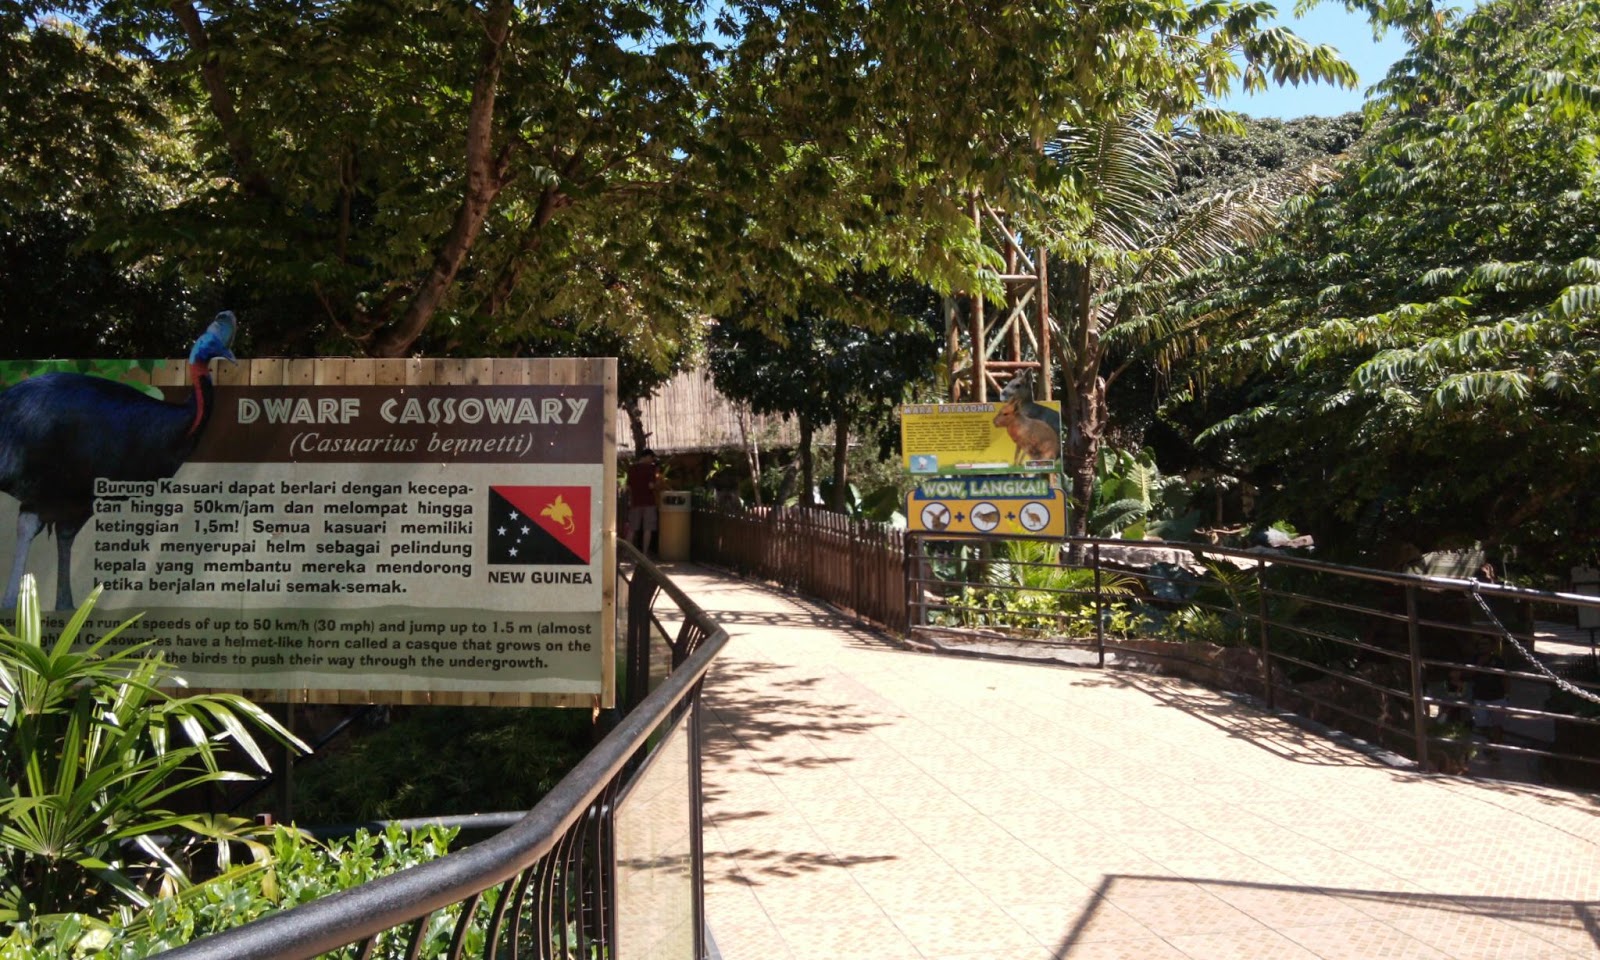 Acaranya Jalan Jalan: Batu Secret Zoo, Jatim Park 2, Malang